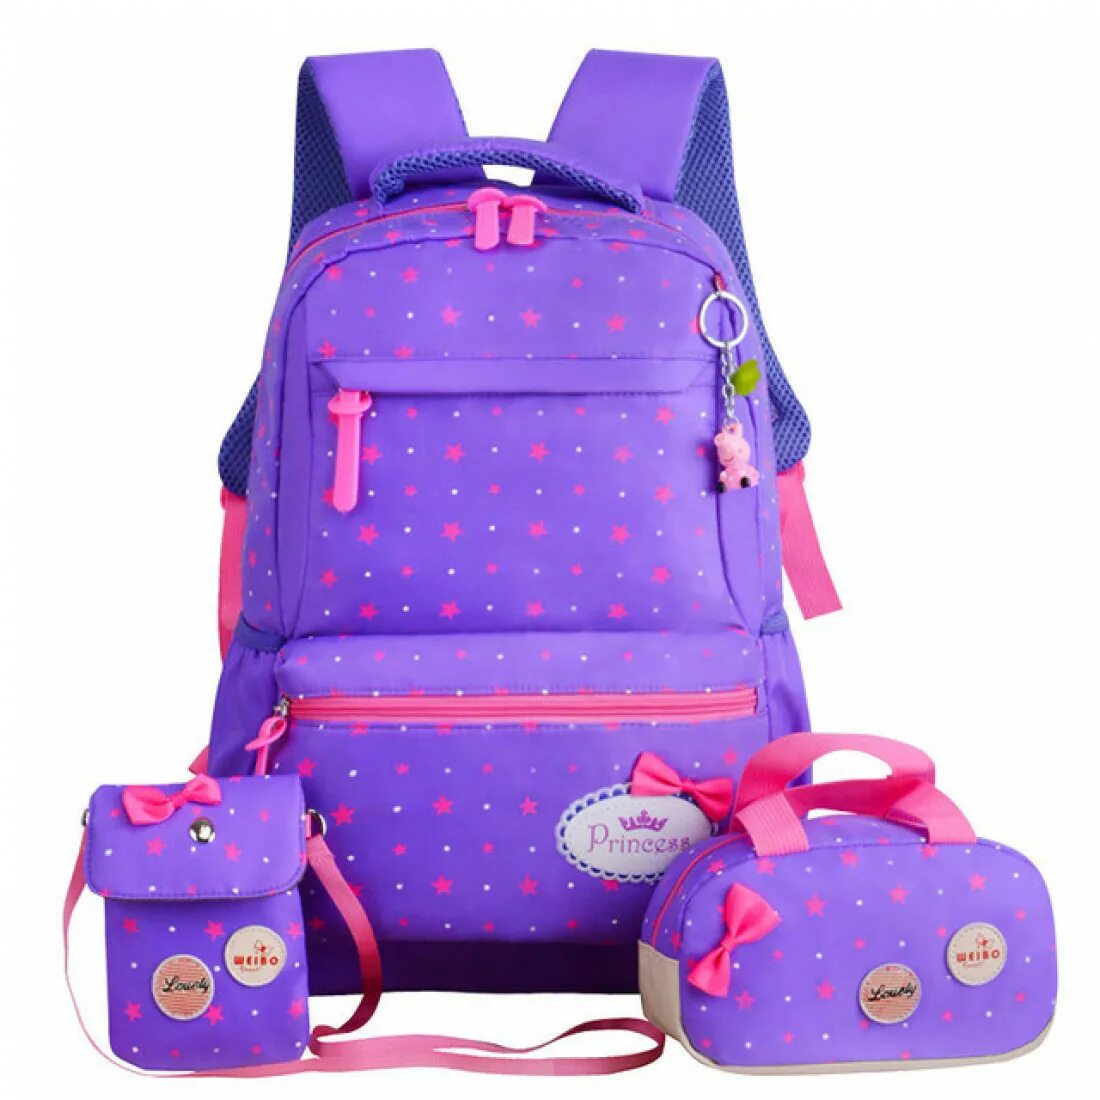 Школьные сумки. Рюкзак для девочки. Школьный рюкзак для девочки. Портфель школьный для девочек. Рюкзаки для девочек в школу.